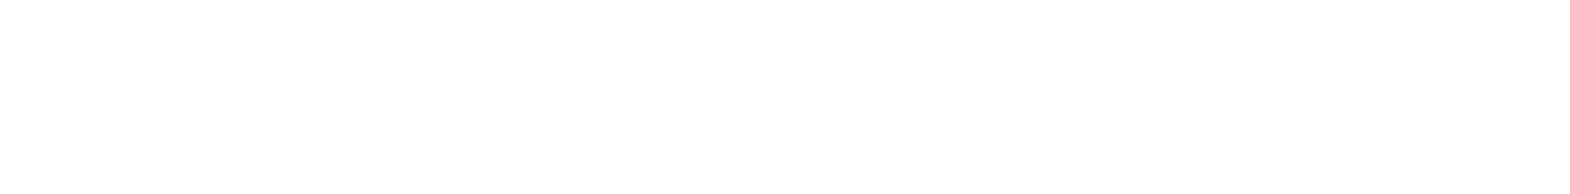 Diploma plc logo grand pour les fonds sombres (PNG transparent)